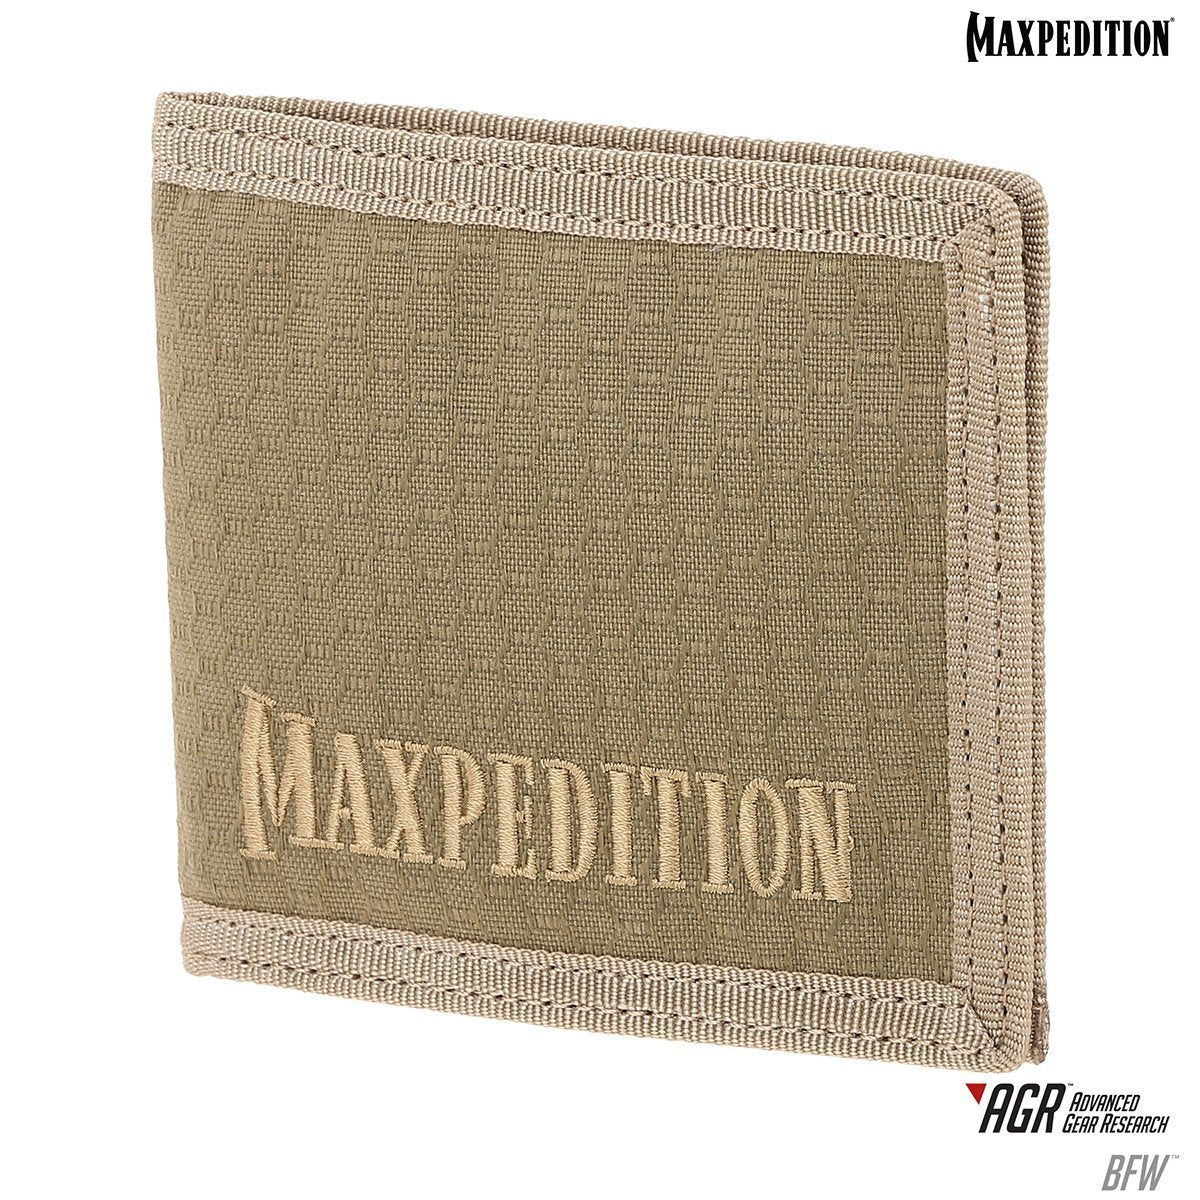 Maxpedition BFW Bi-Fold Wallet Accessories Maxpedition Tan Tactical Gear Supplier Tactical Distributors Australia